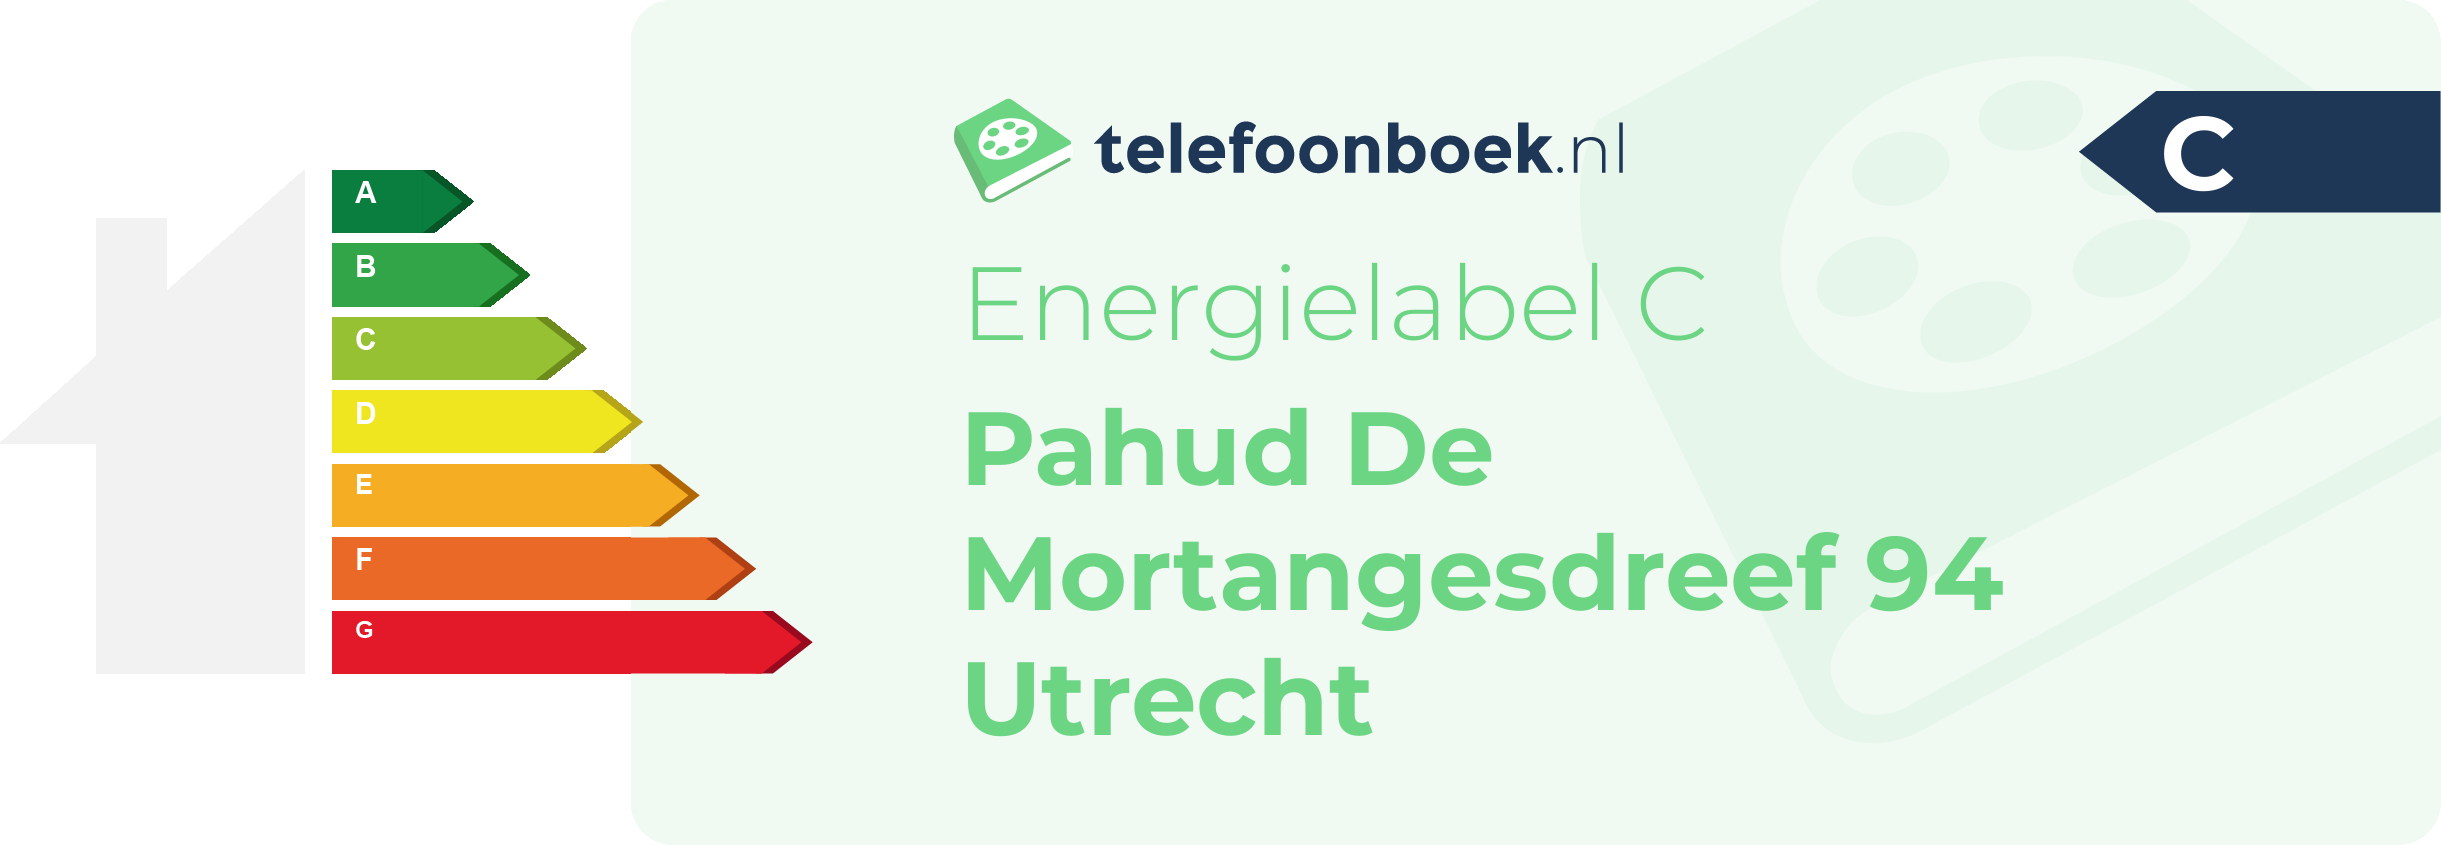 Energielabel Pahud De Mortangesdreef 94 Utrecht